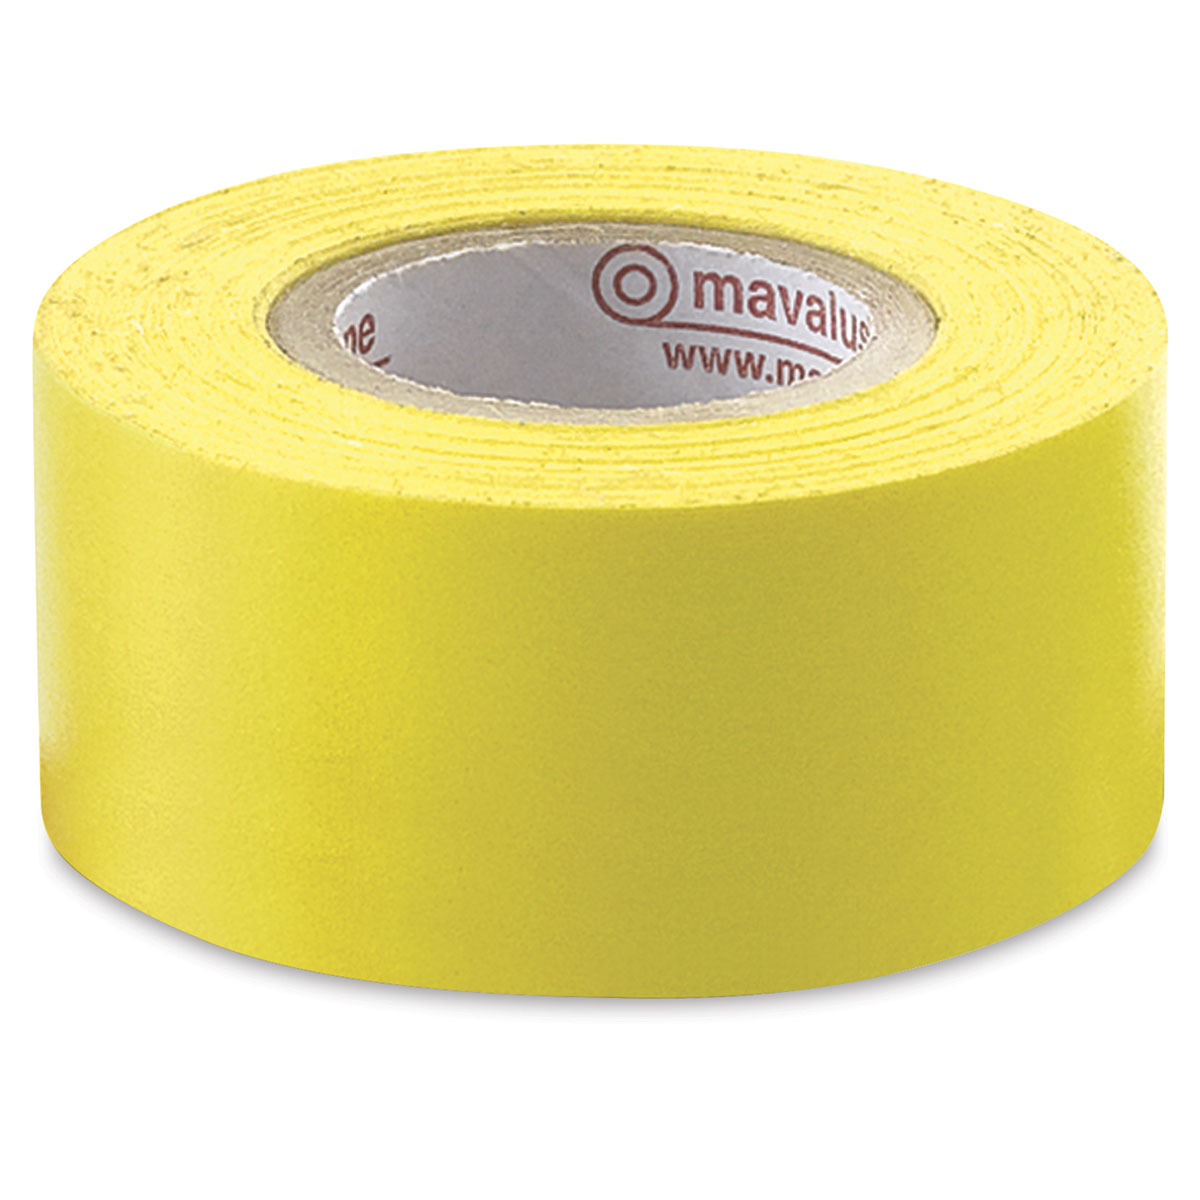 Mavalus® Removable Tape Jumbo Roll